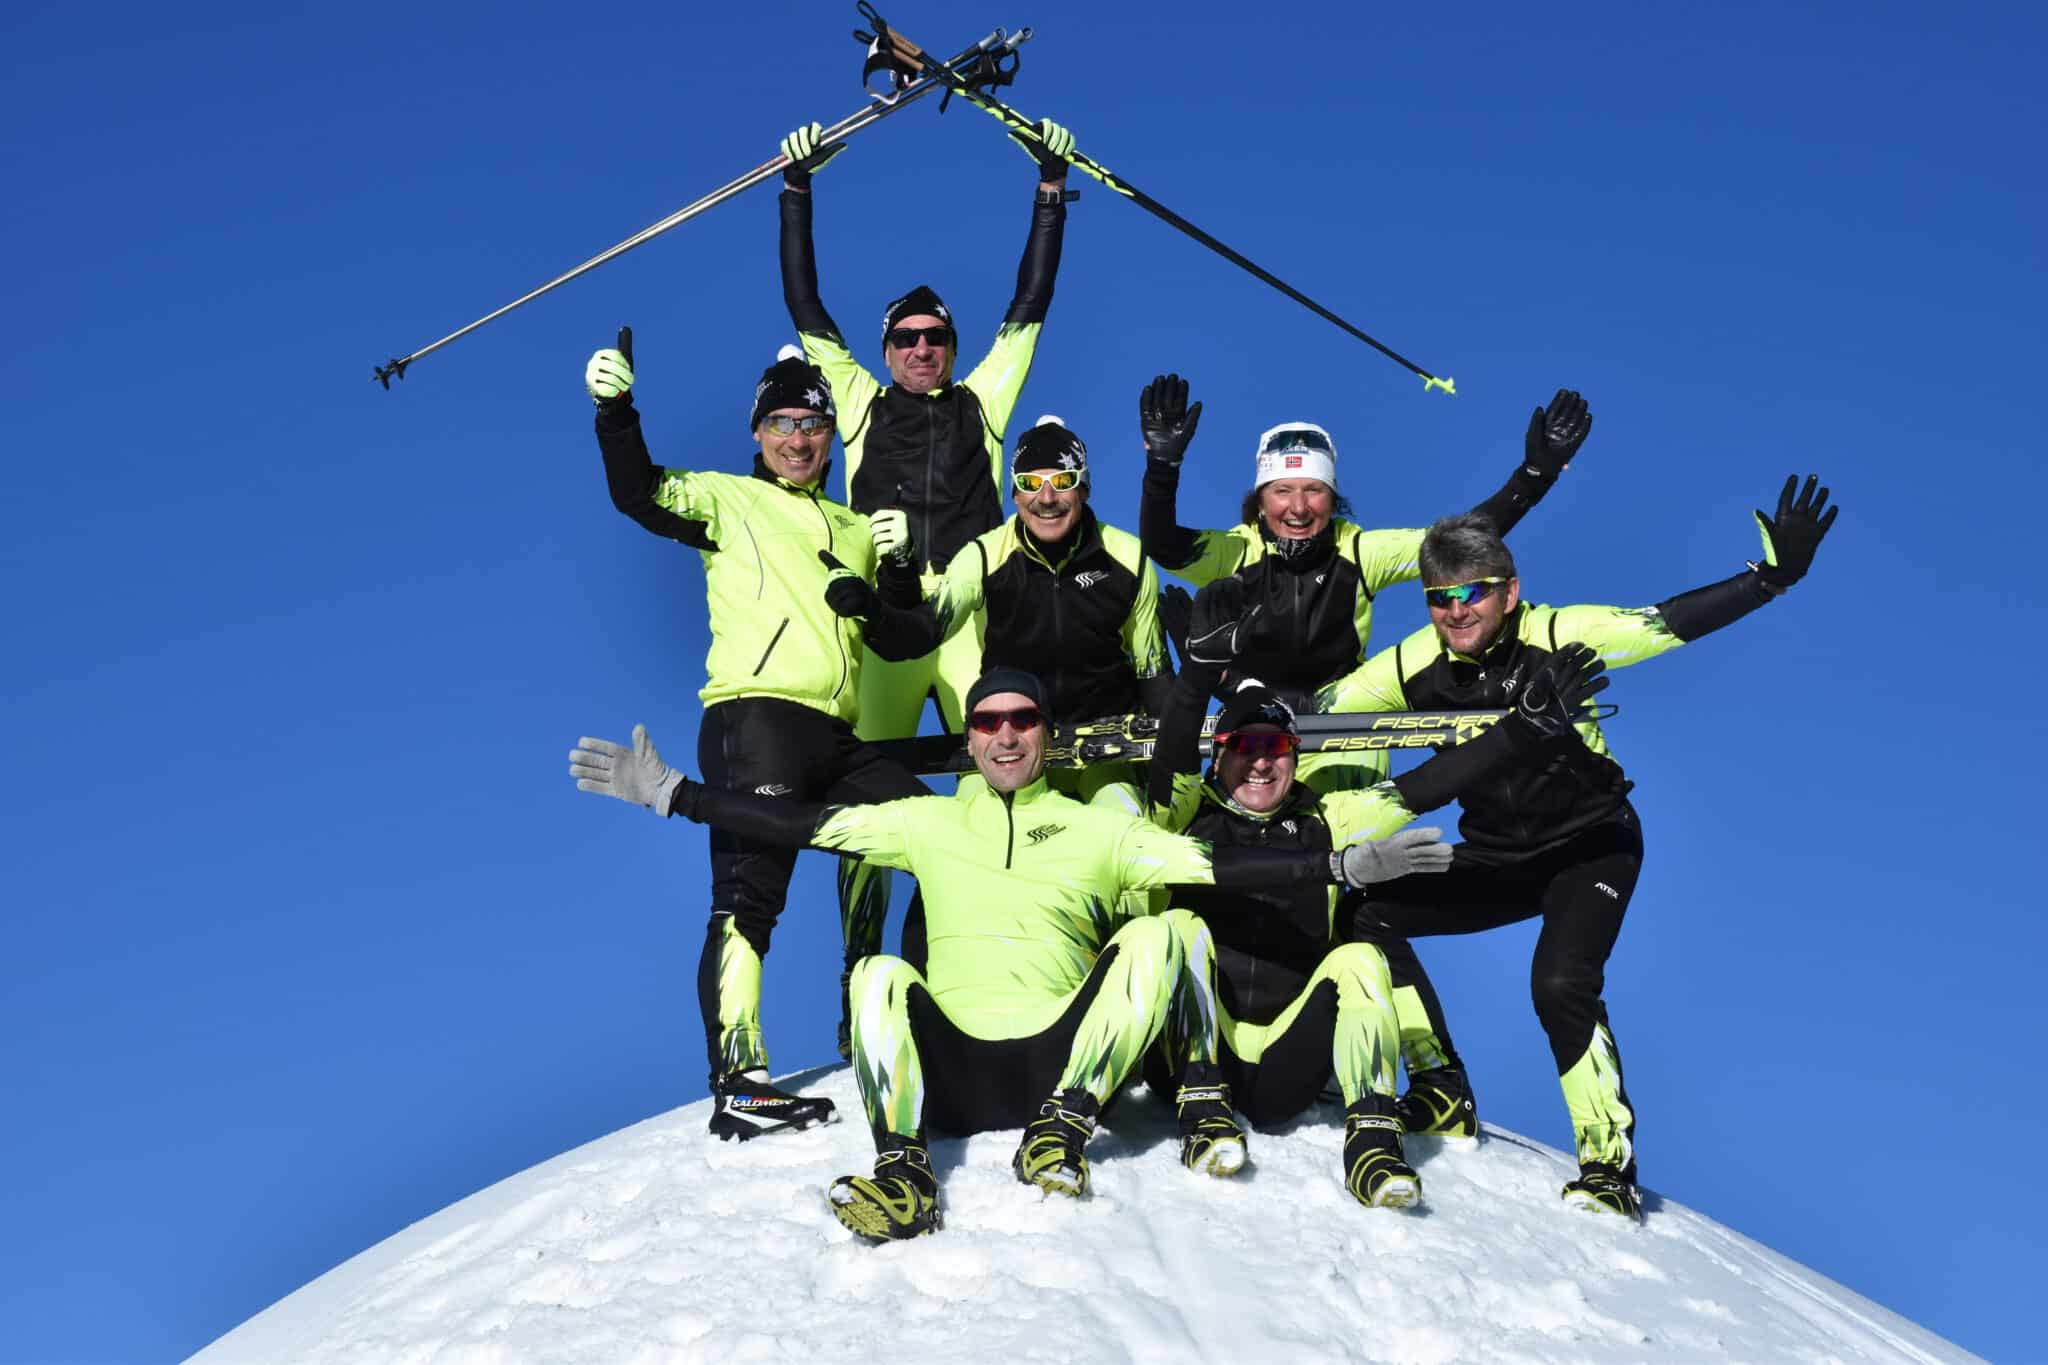 Langlauf - Genuss- und Biathlonwoche in Toblach/Dolomiten 2021 - abgesagt